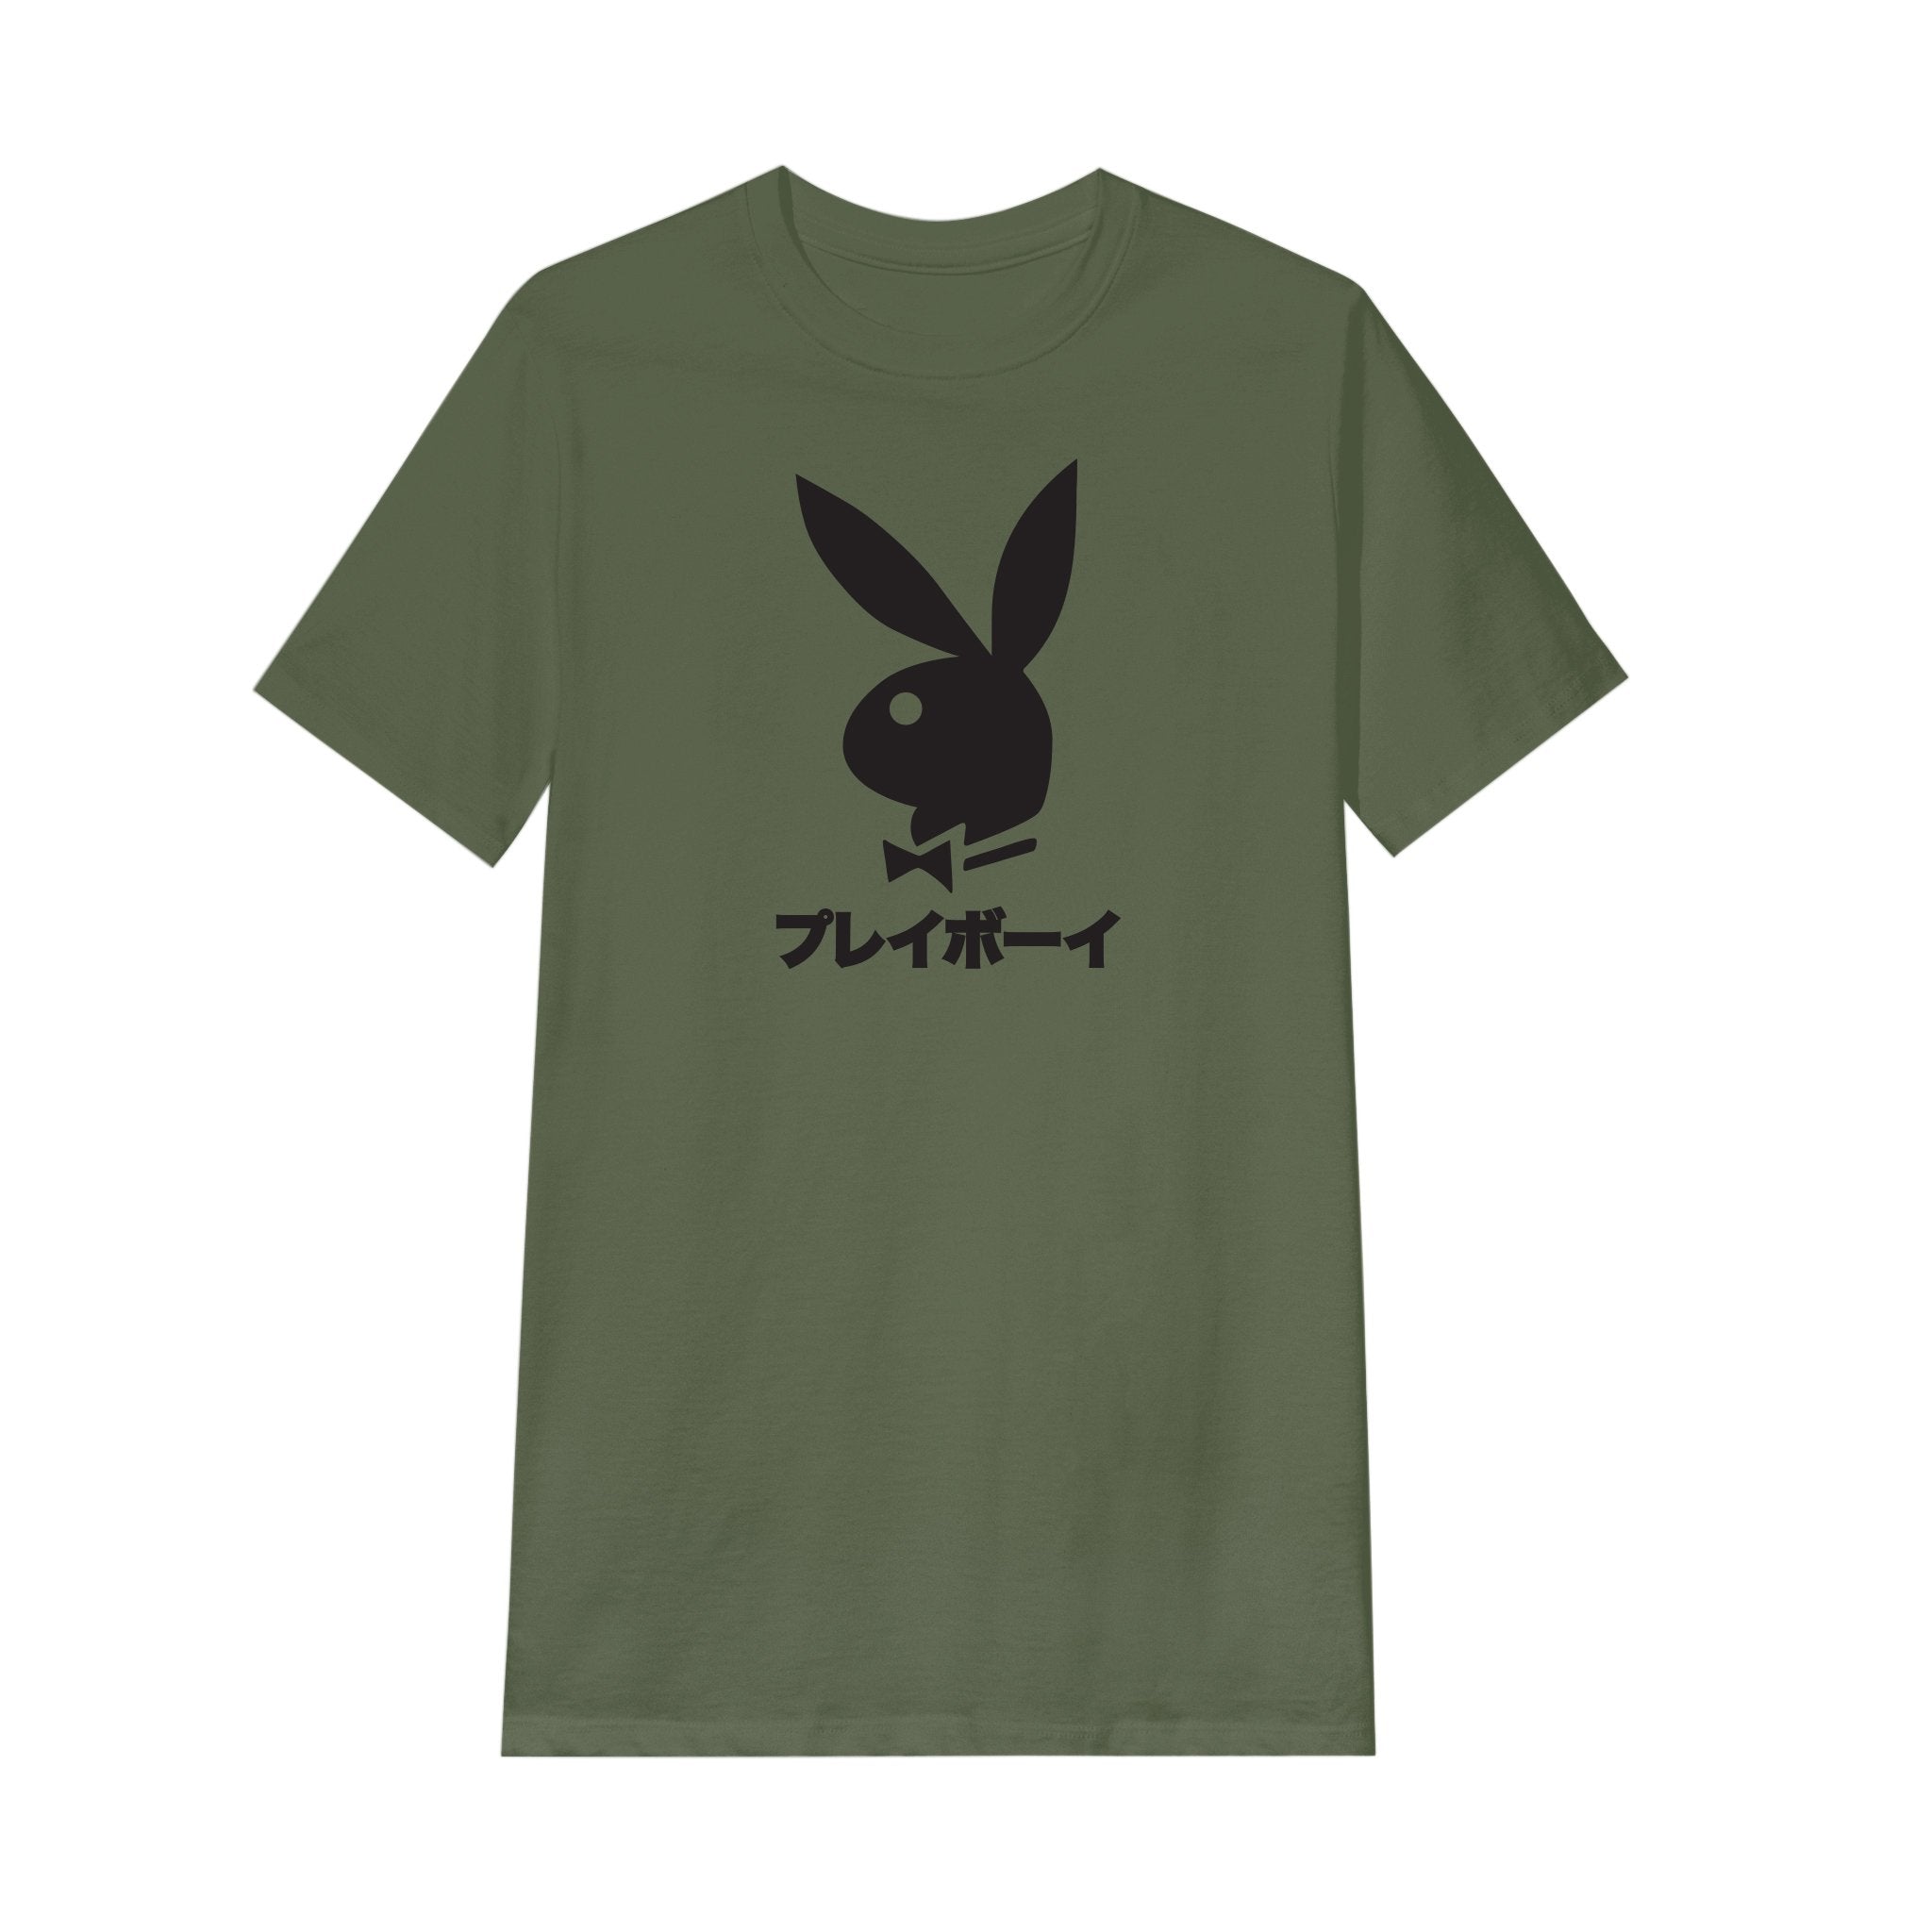 Japanese Rabbit Head T-Shirt